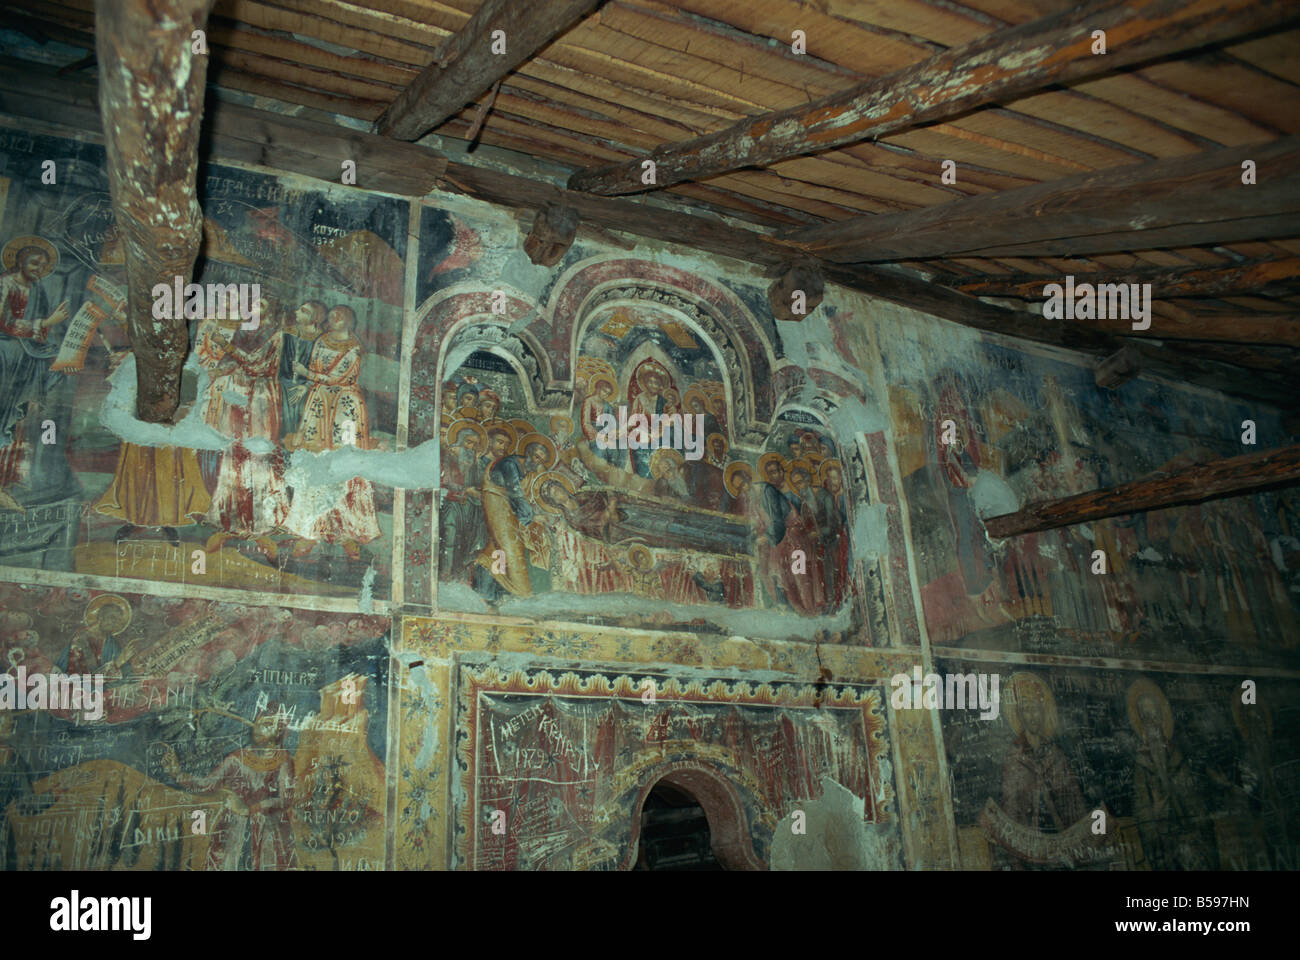 Des fresques sur les murs de l'église du 16ème siècle par Onufri Leusa Europe Albanie Banque D'Images